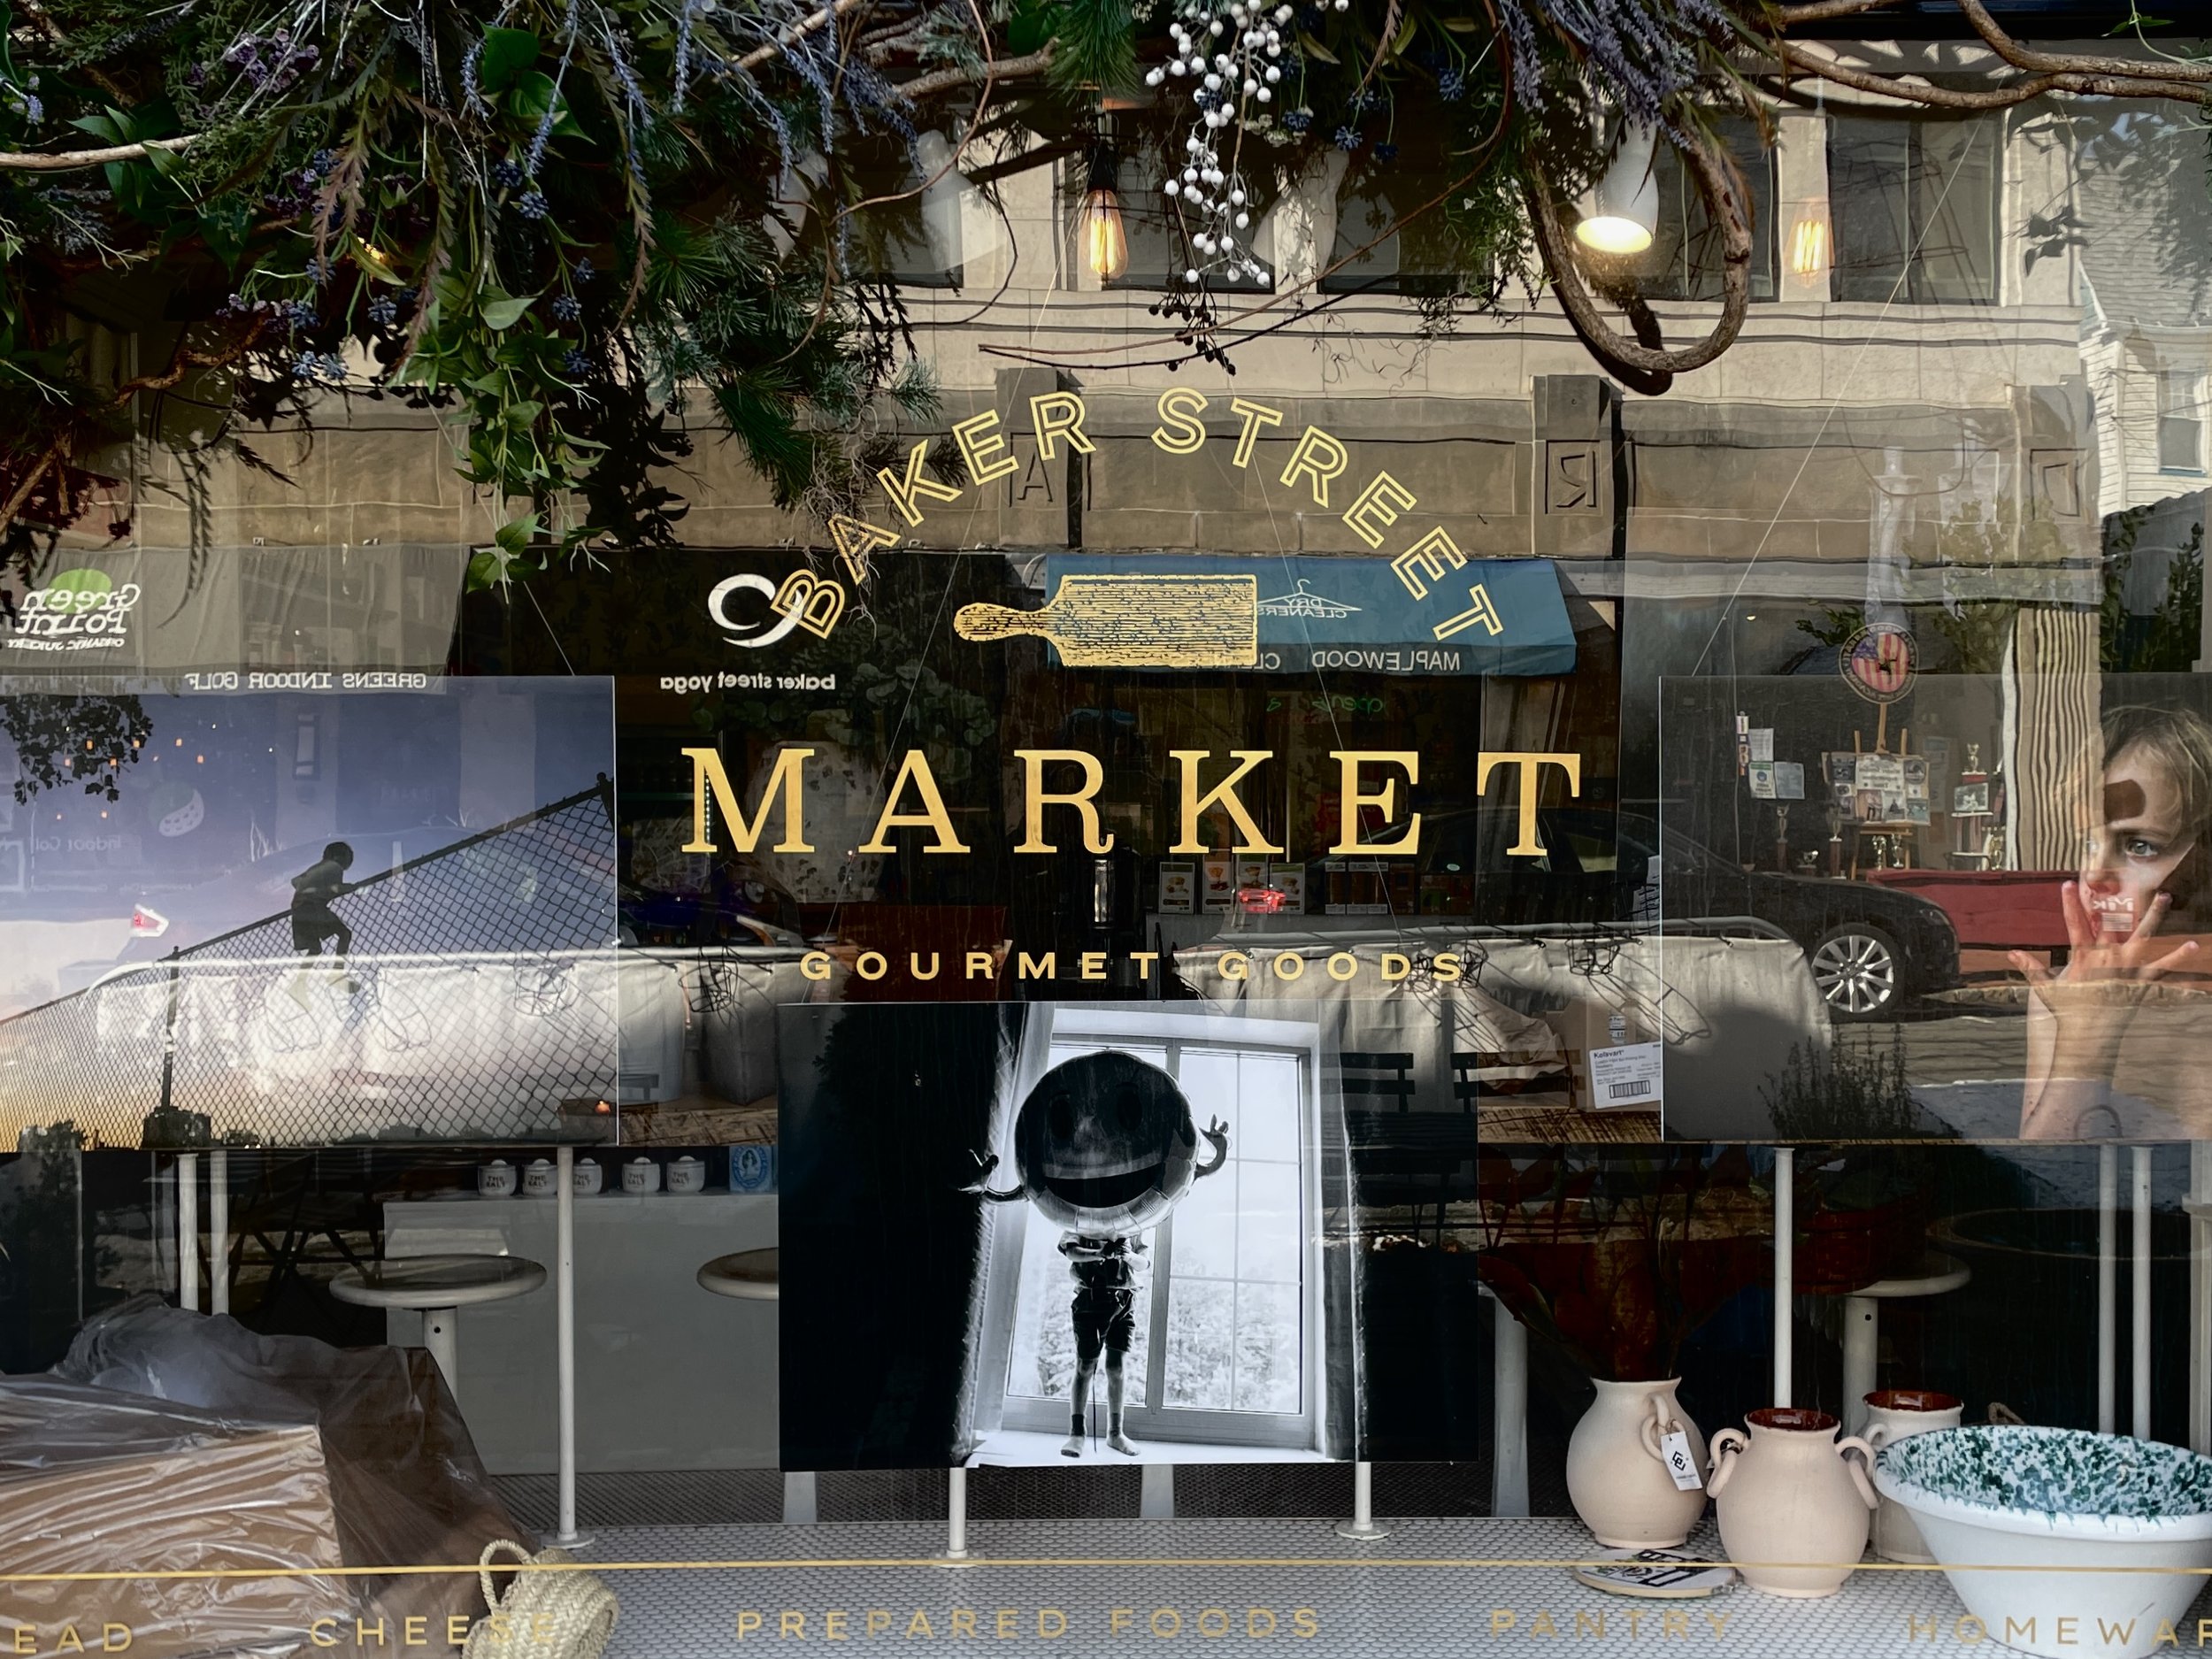 Baker Street Market IMG_5592.jpg